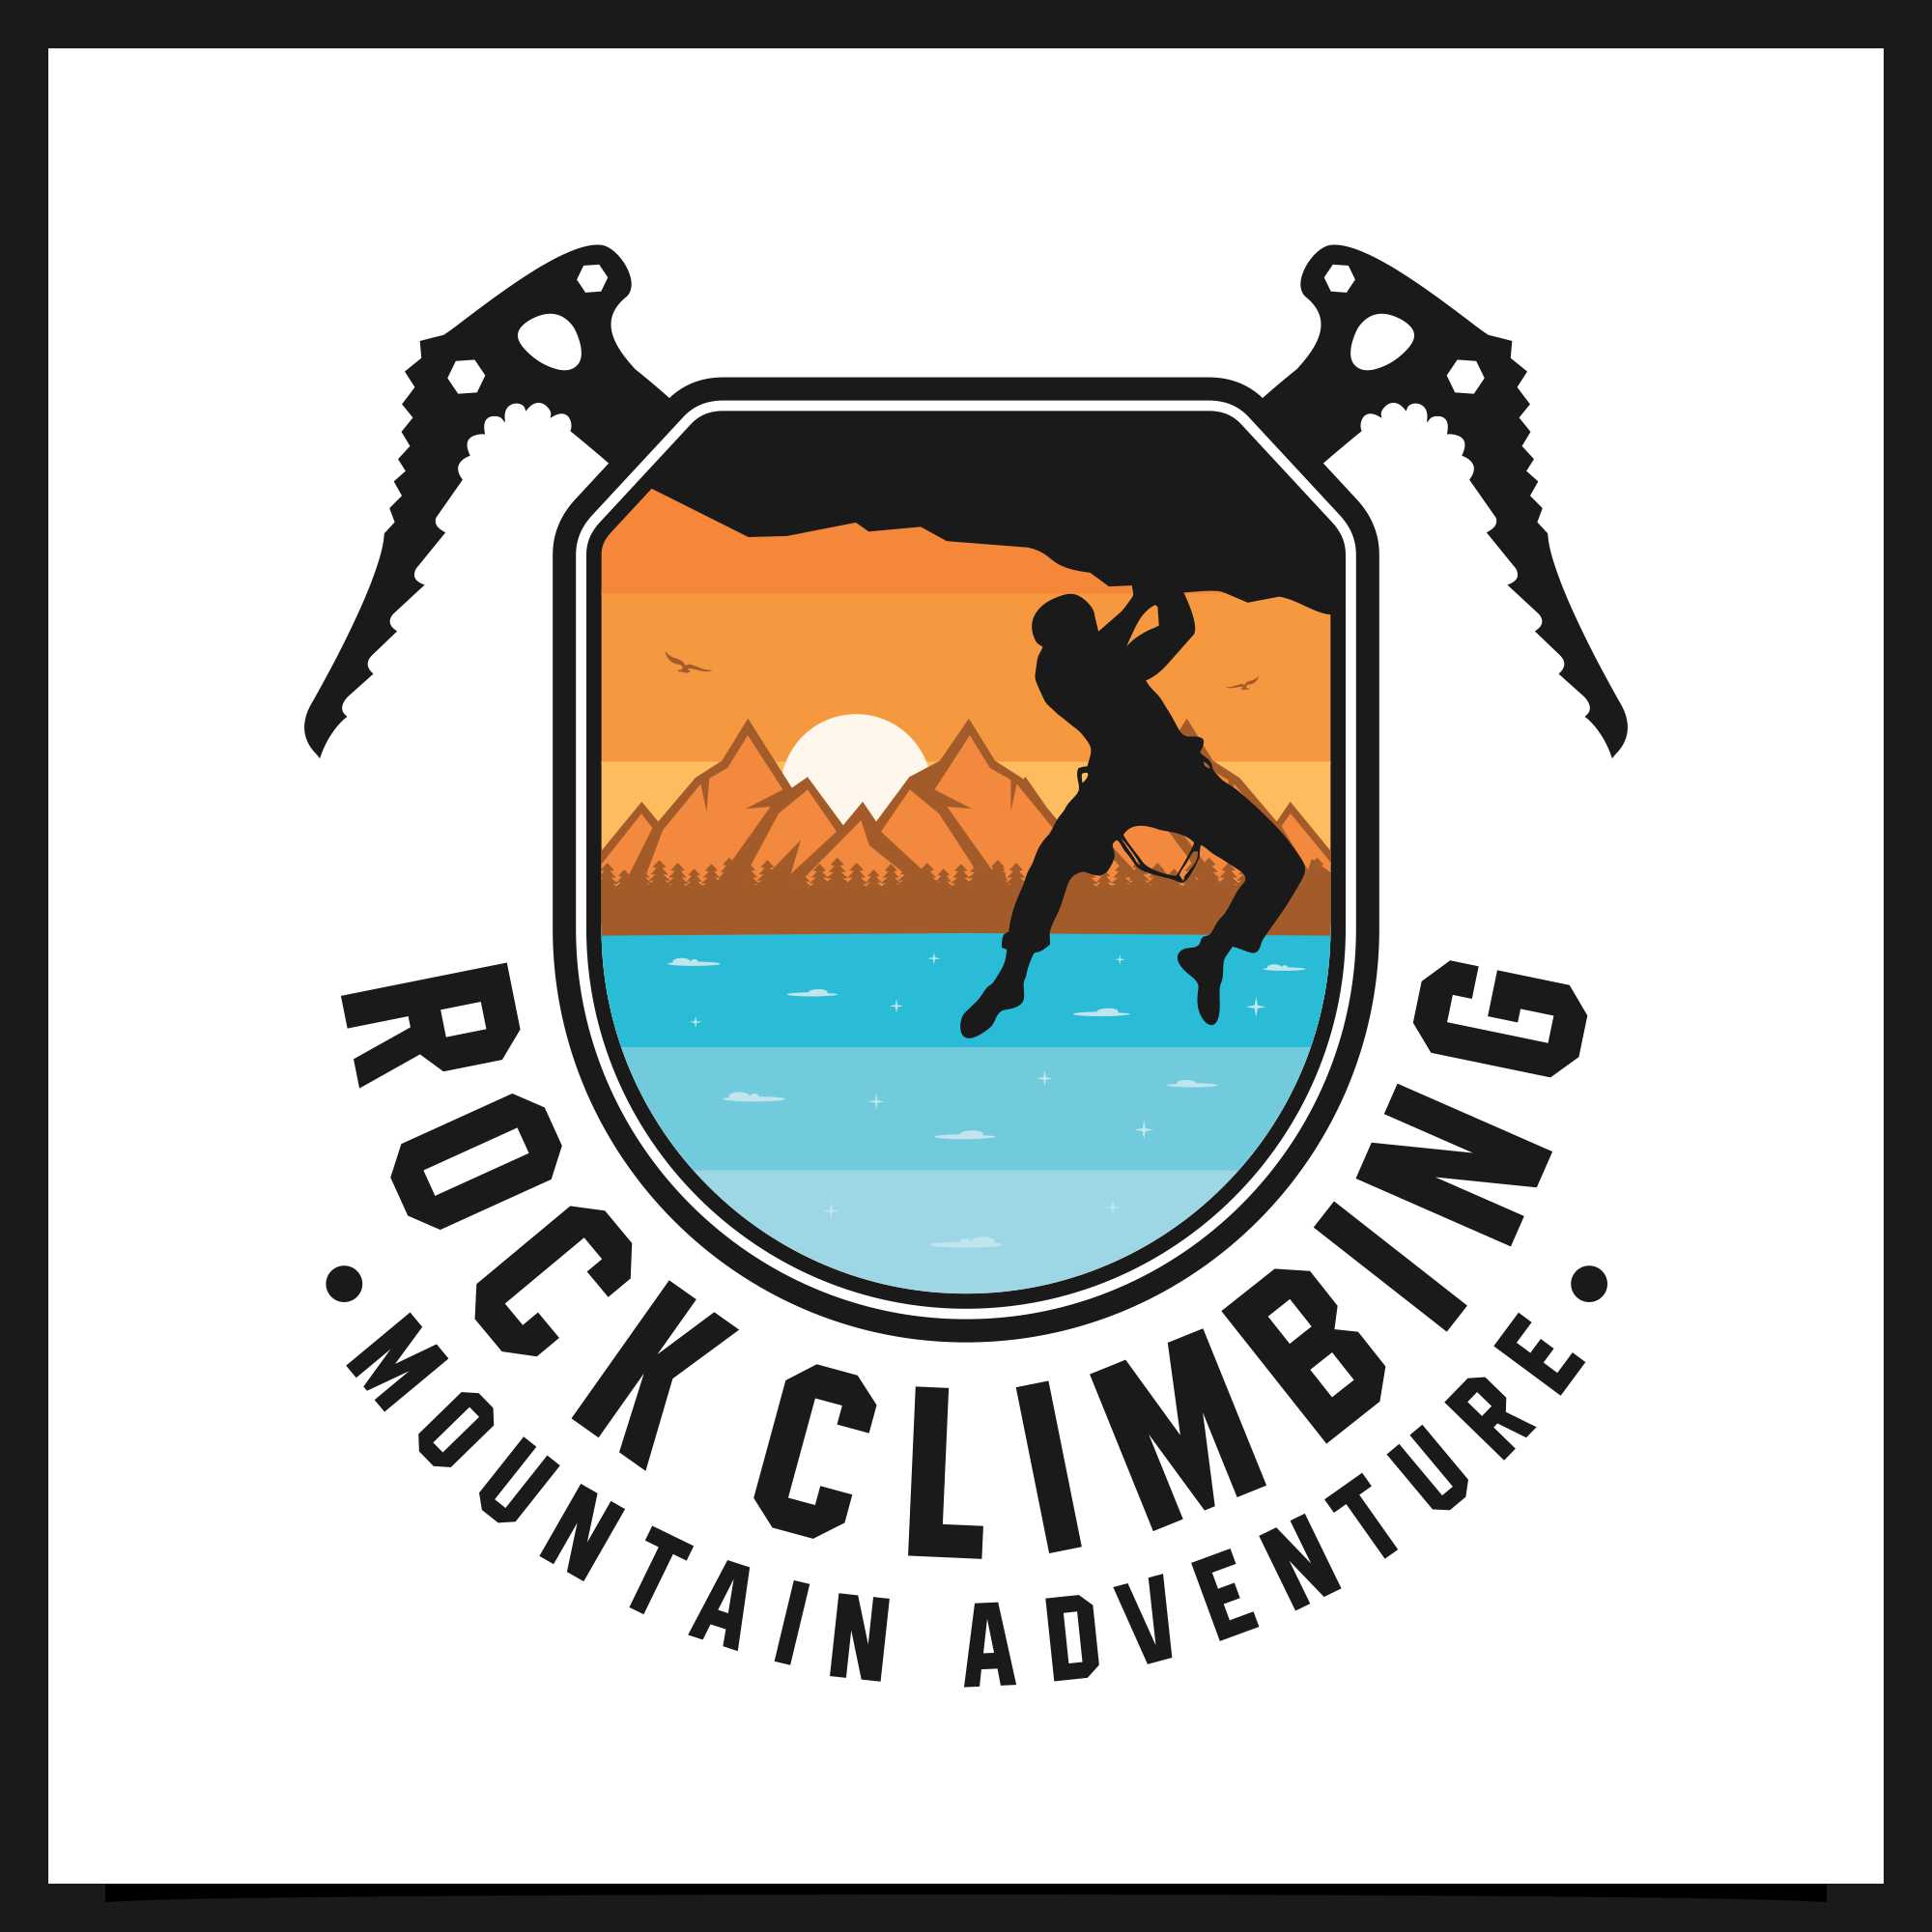 Rock Climbing mountain adventure logo - $5 cover image.